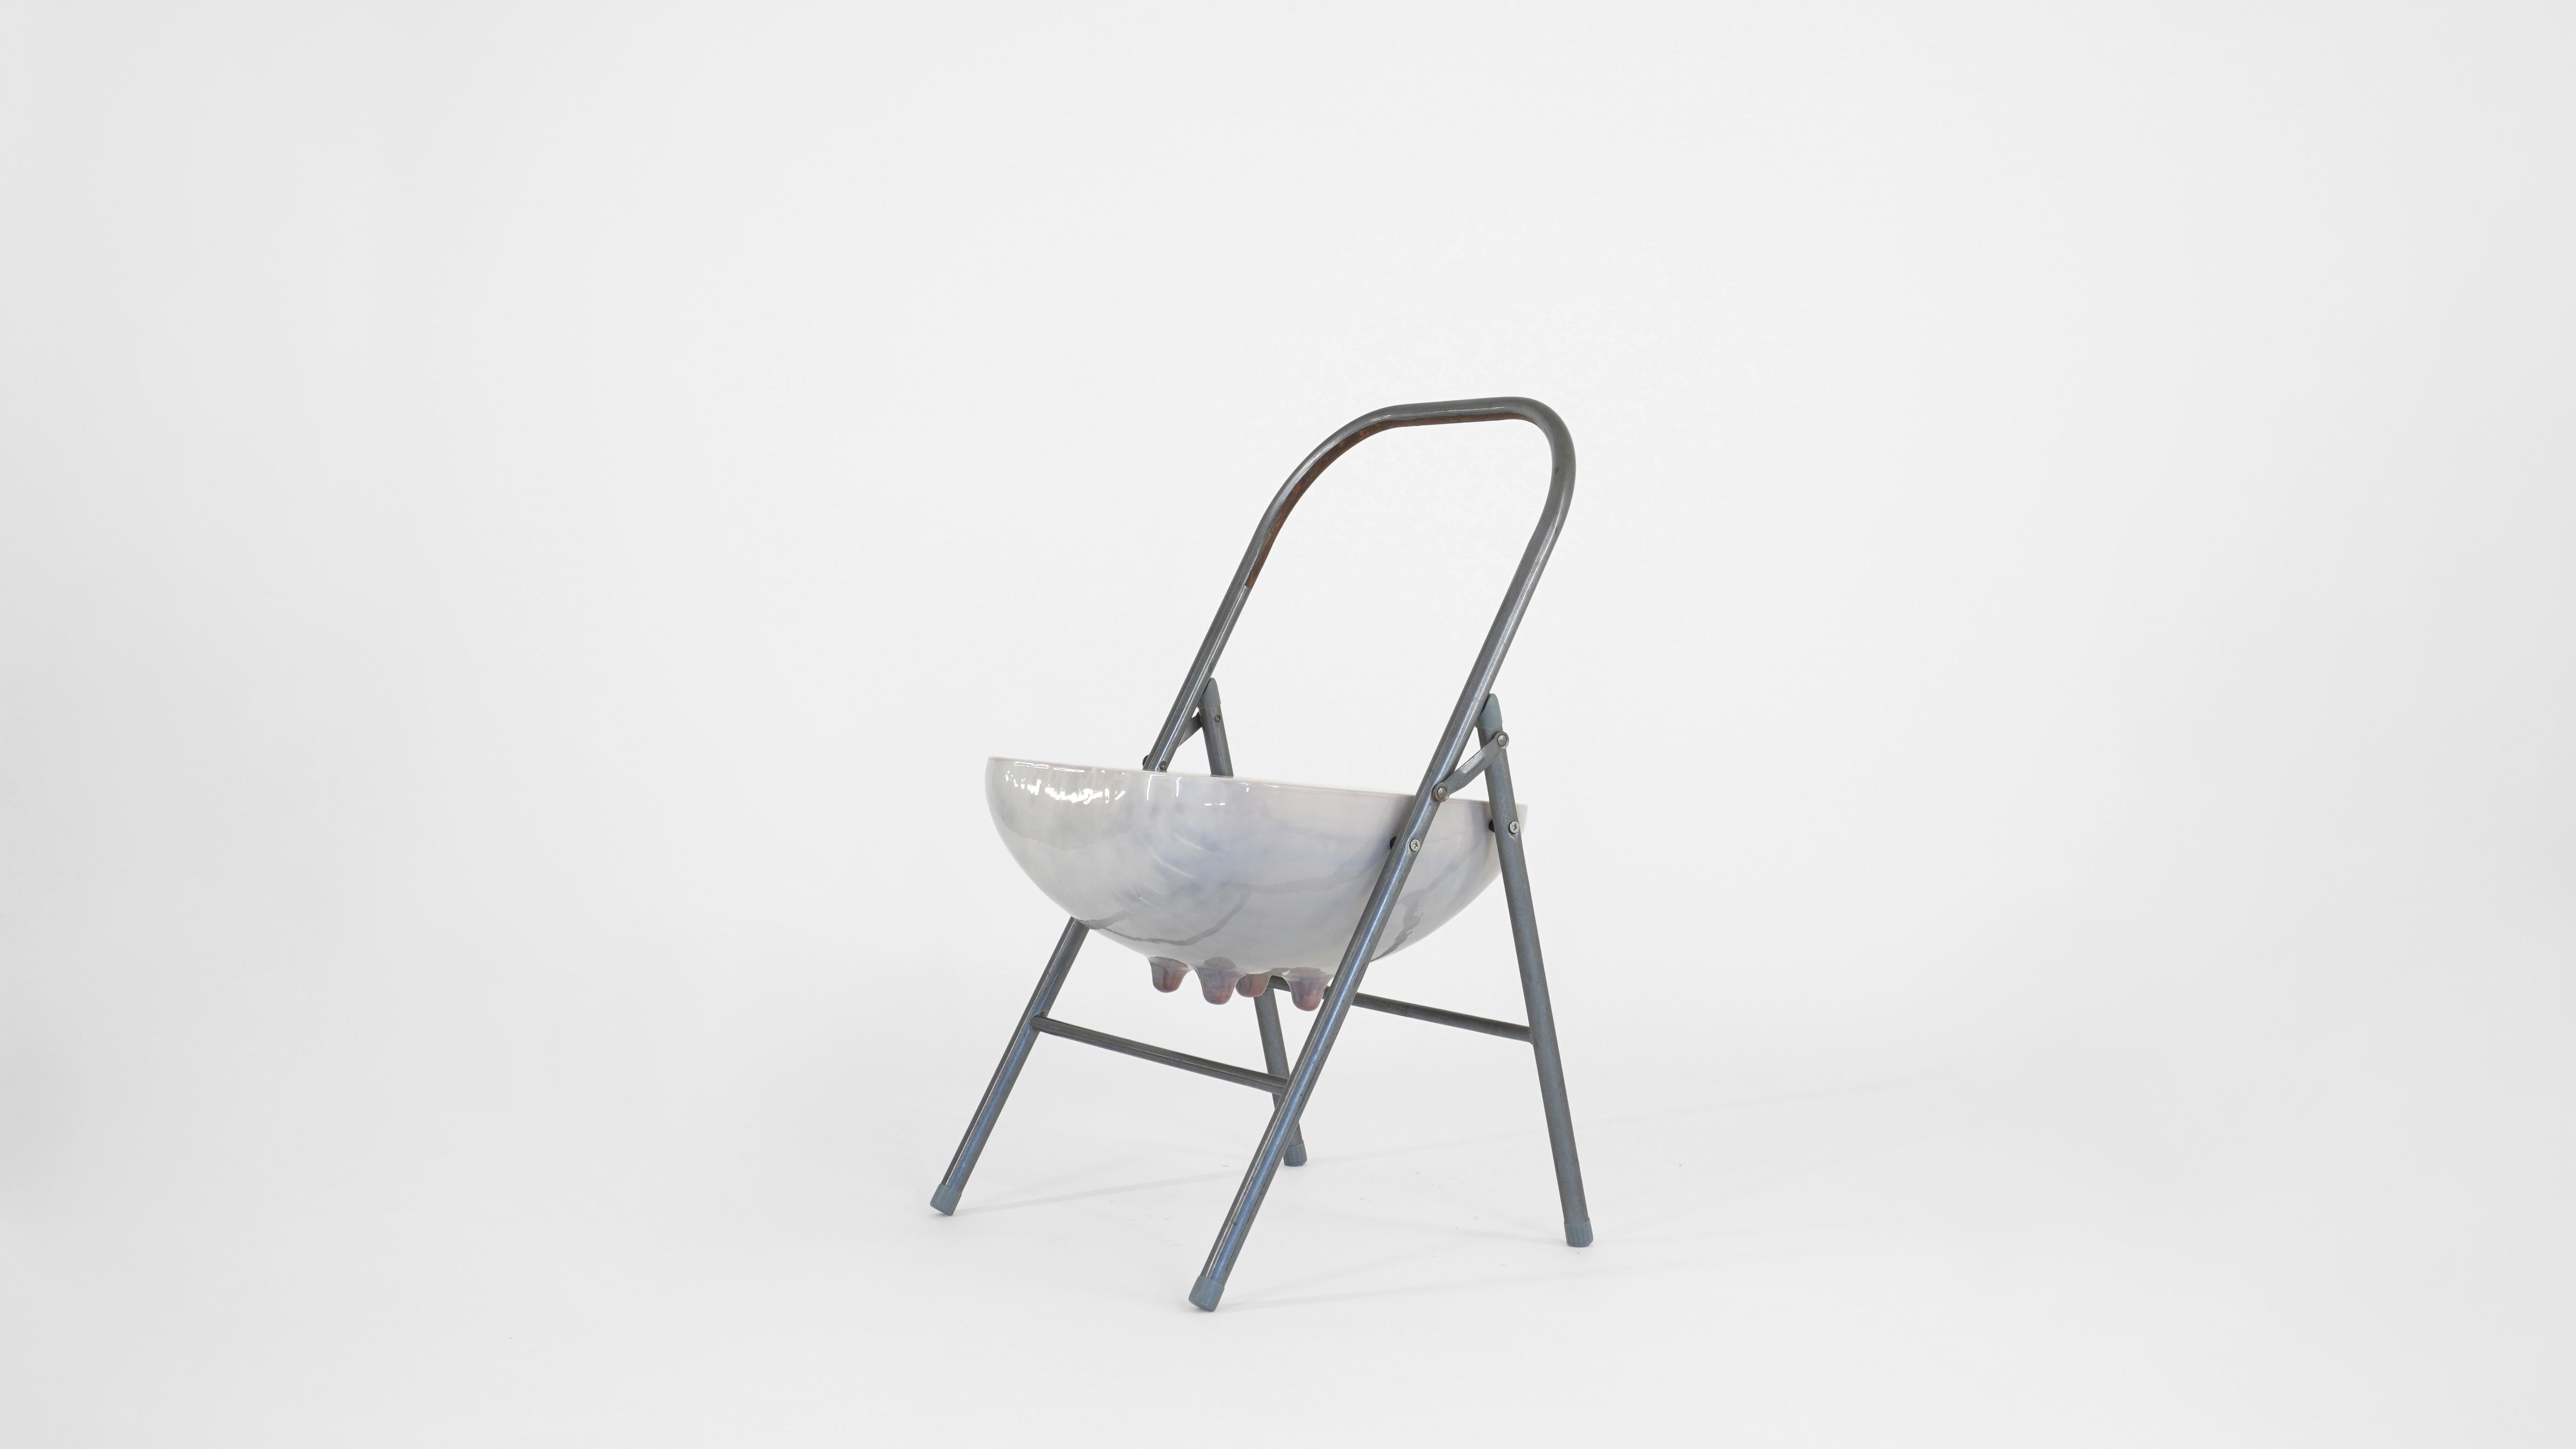 Klappbarer Udder-Stuhl von Henry D'ath
Einzigartige Ausgabe
Abmessungen: T 45 x B 45 x H 77,5 cm
MATERIALIEN: Holz, Stahl.

Das Stück wird vom Künstler handgefertigt.

Der klappbare Euterstuhl vereint zwei Symbole der Industrie. Ein in